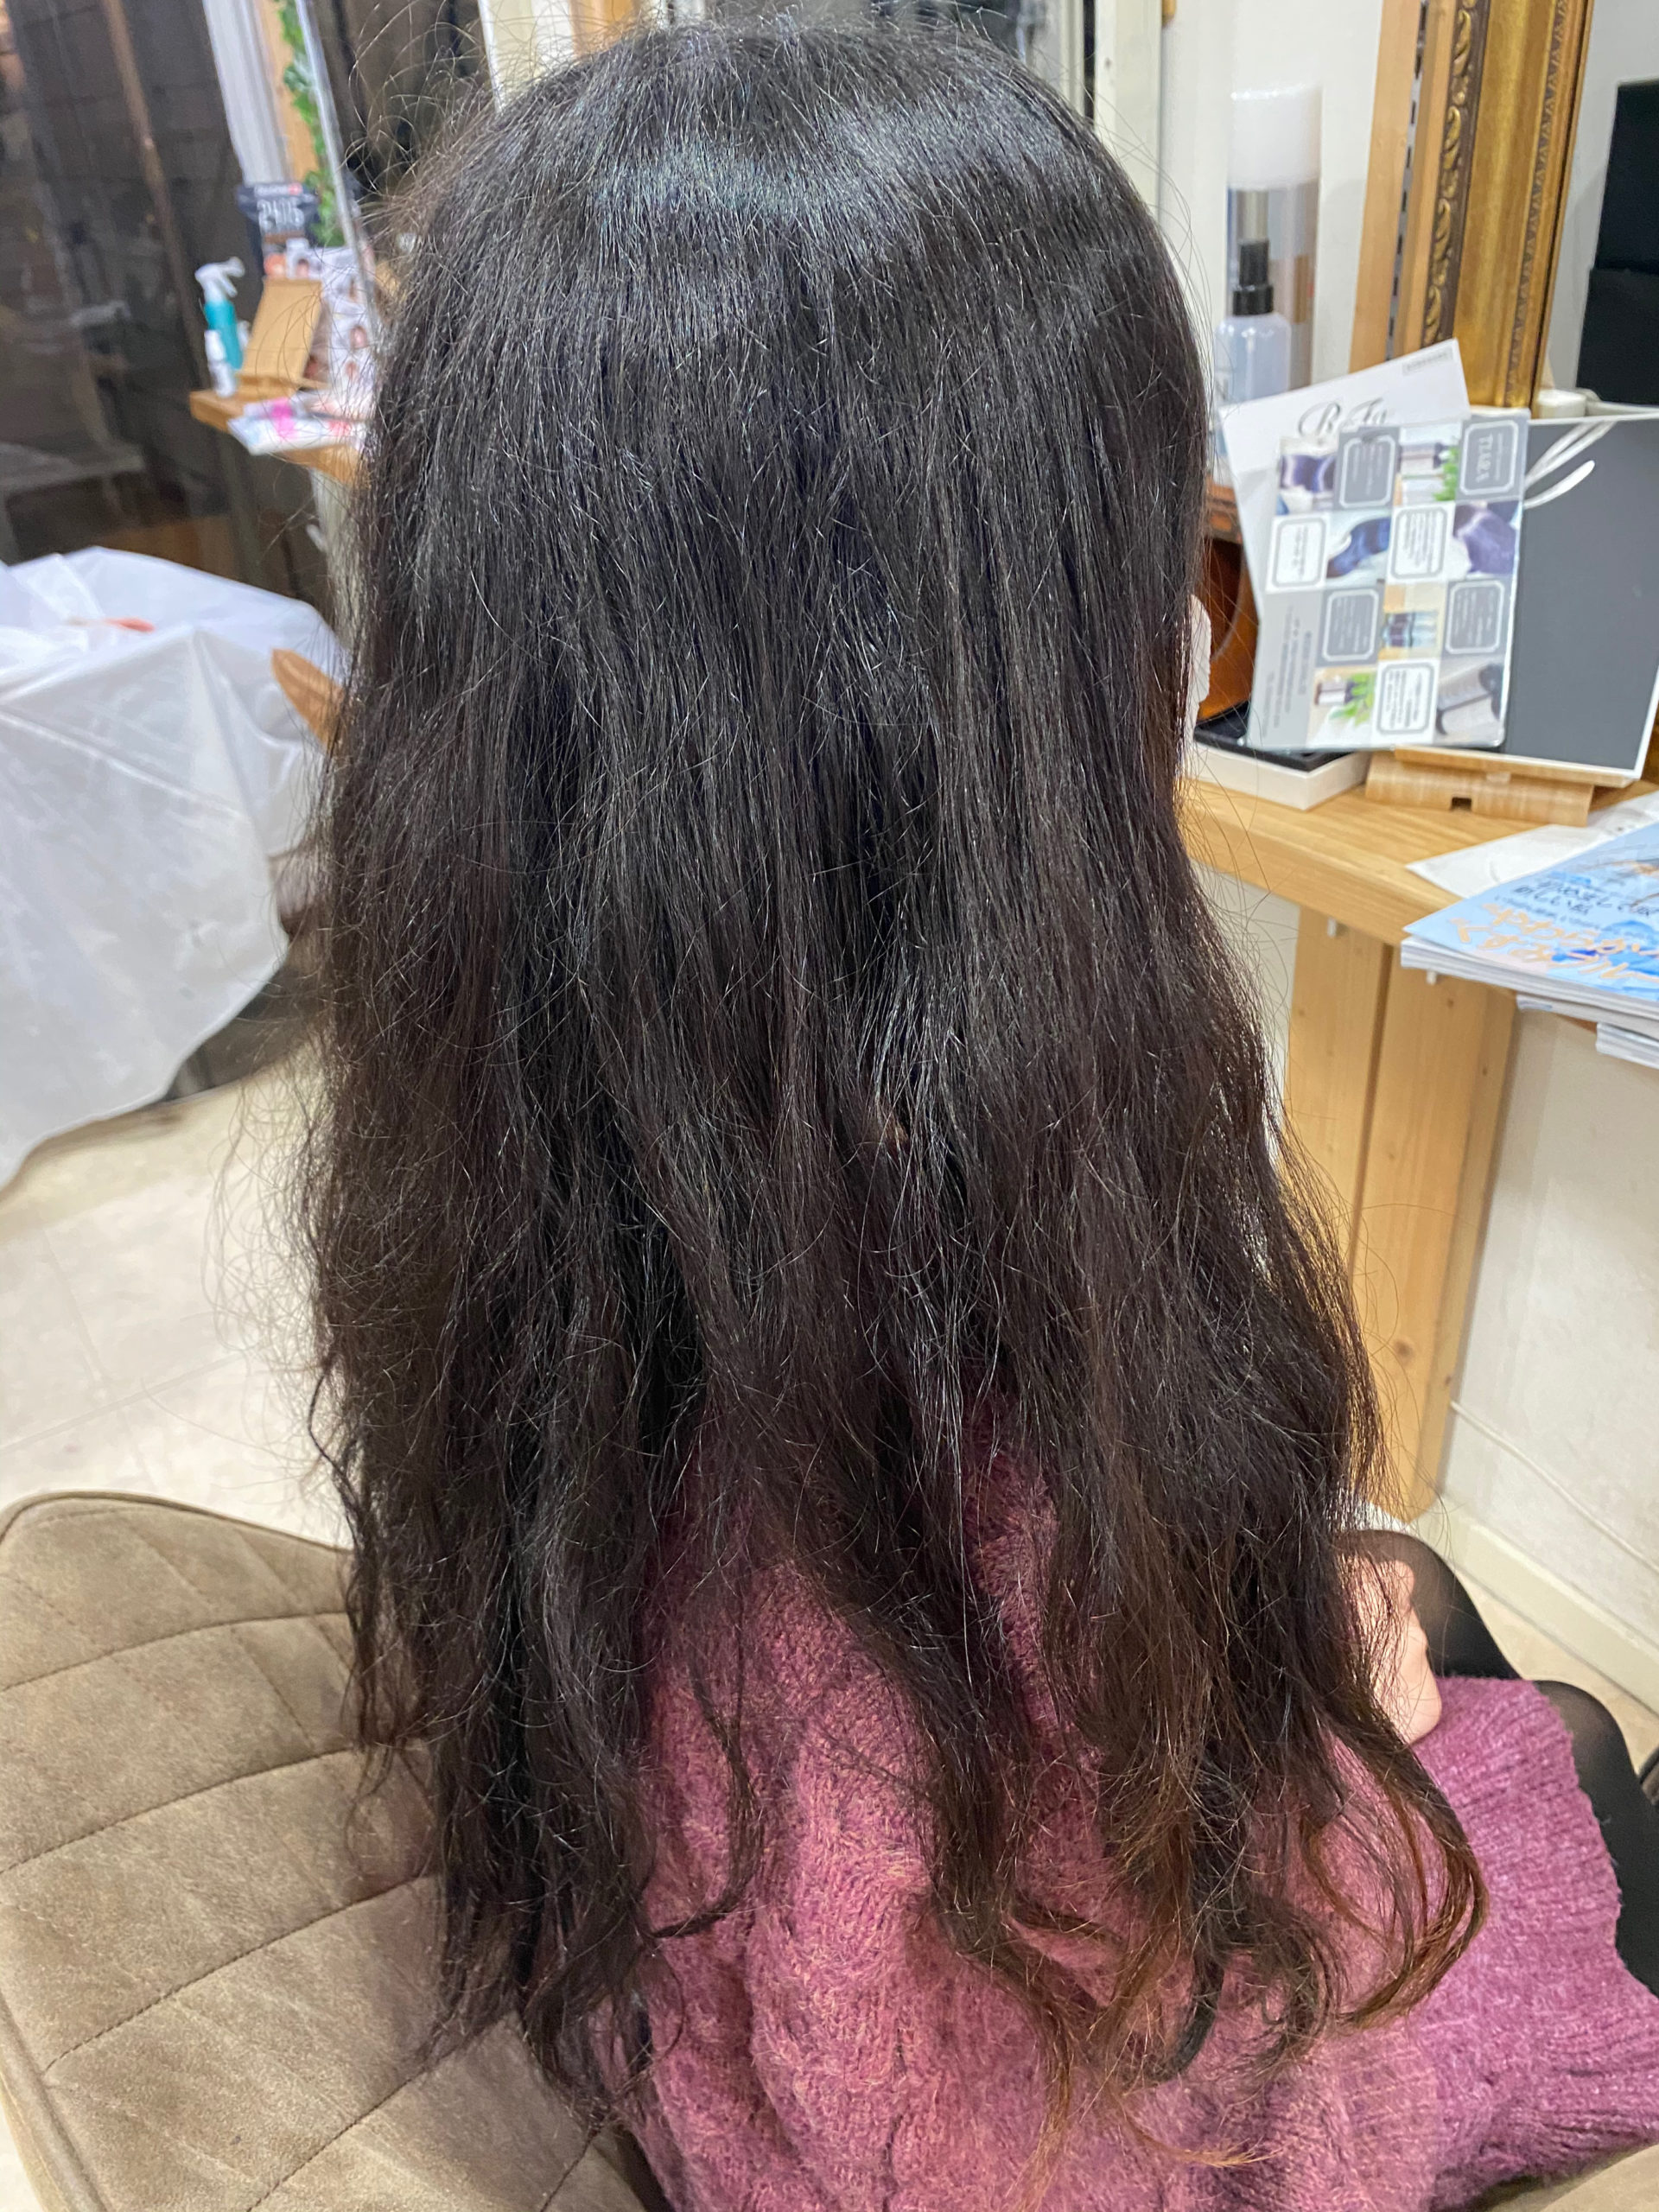 デジタルパーマがかかっている髪を縮毛矯正で艶髪ストレートヘアに。原宿・表参道『髪のお悩みを解決するヘアケア美容師の挑戦』